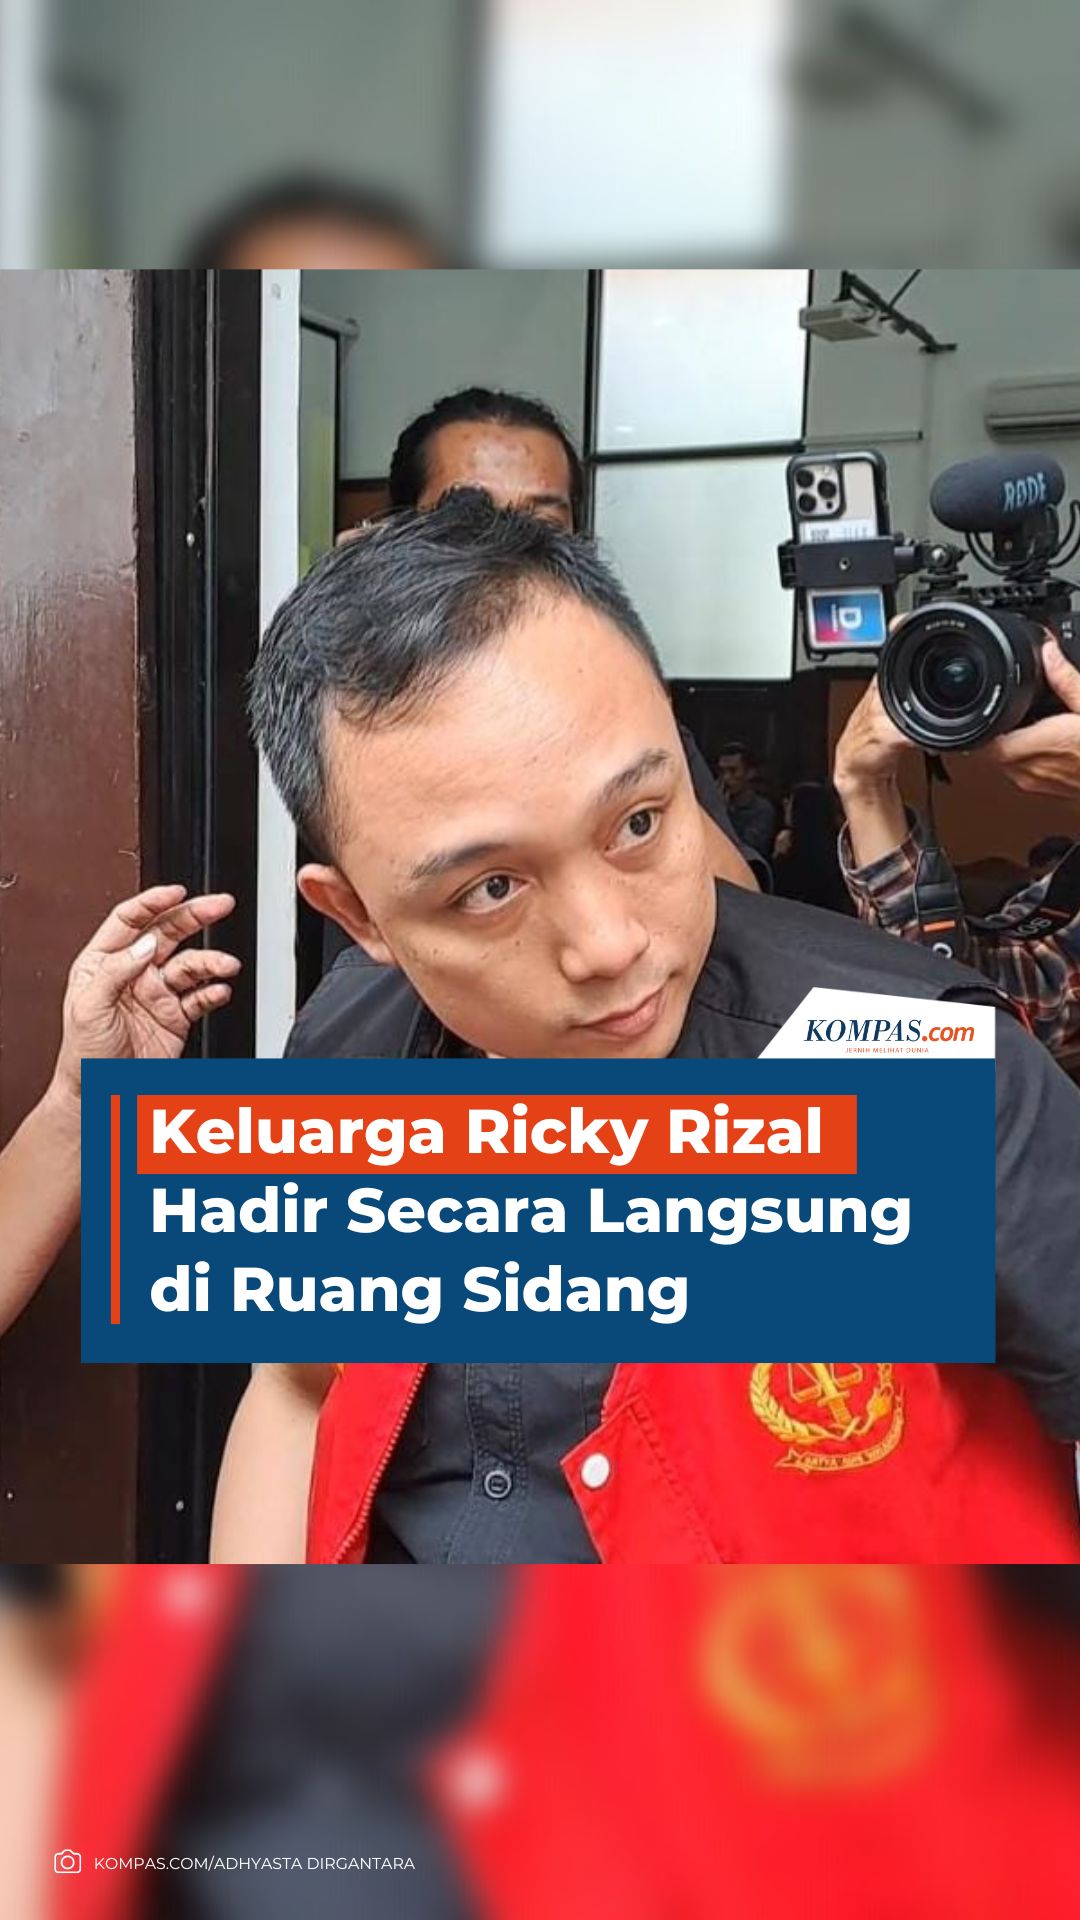 Keluarga Ricky Rizal Hadir Secara Langsung di Ruang Sidang